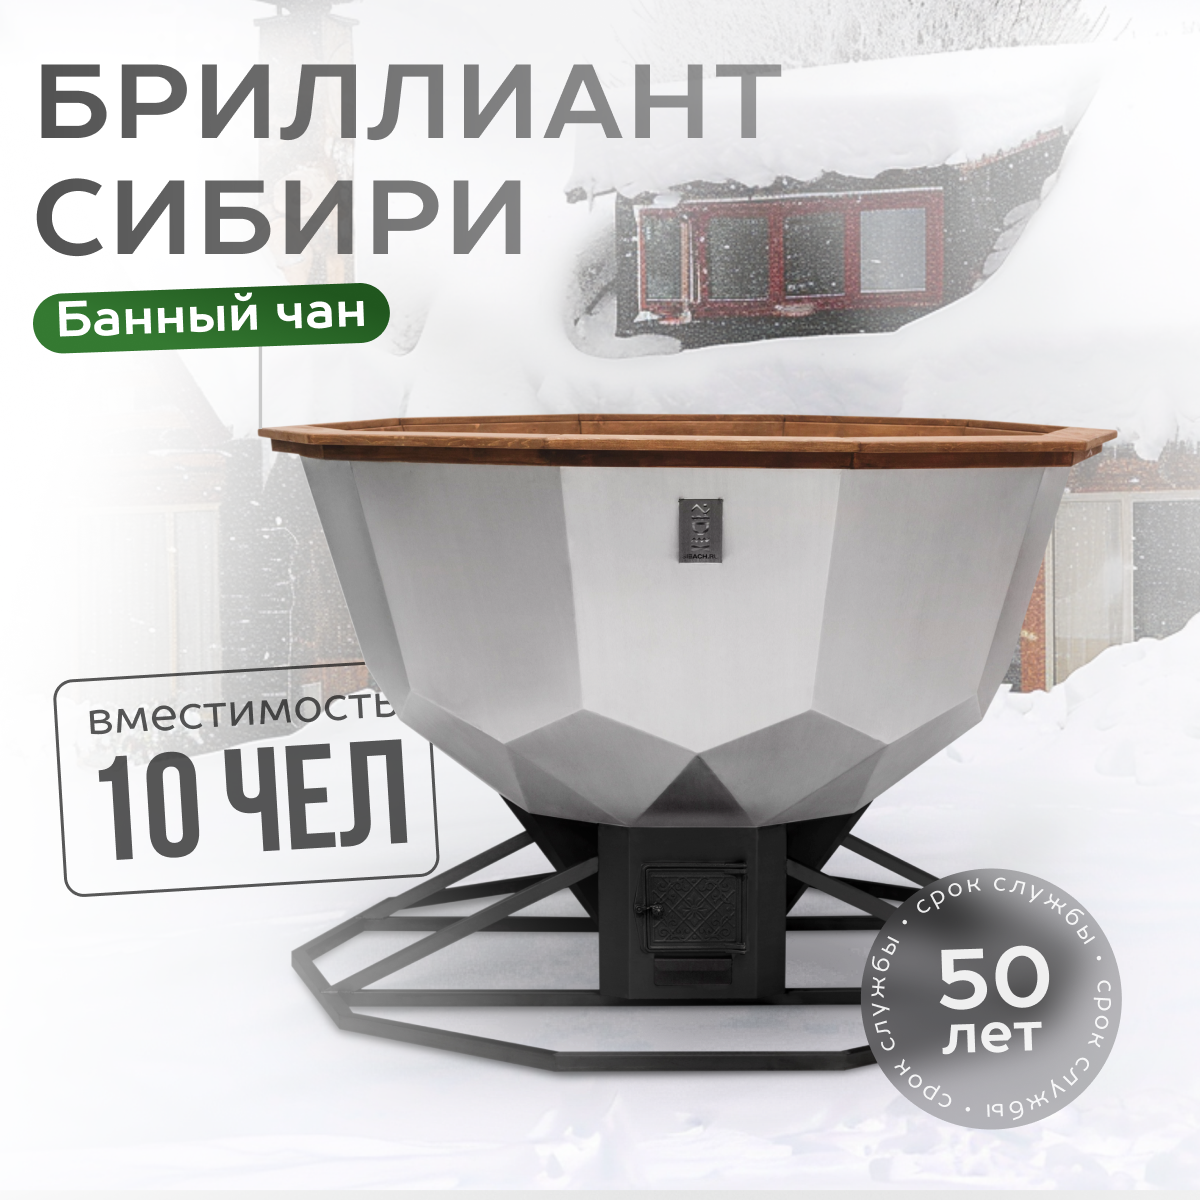 Банный чан Бриллиант Сибири на 10 человек с печью